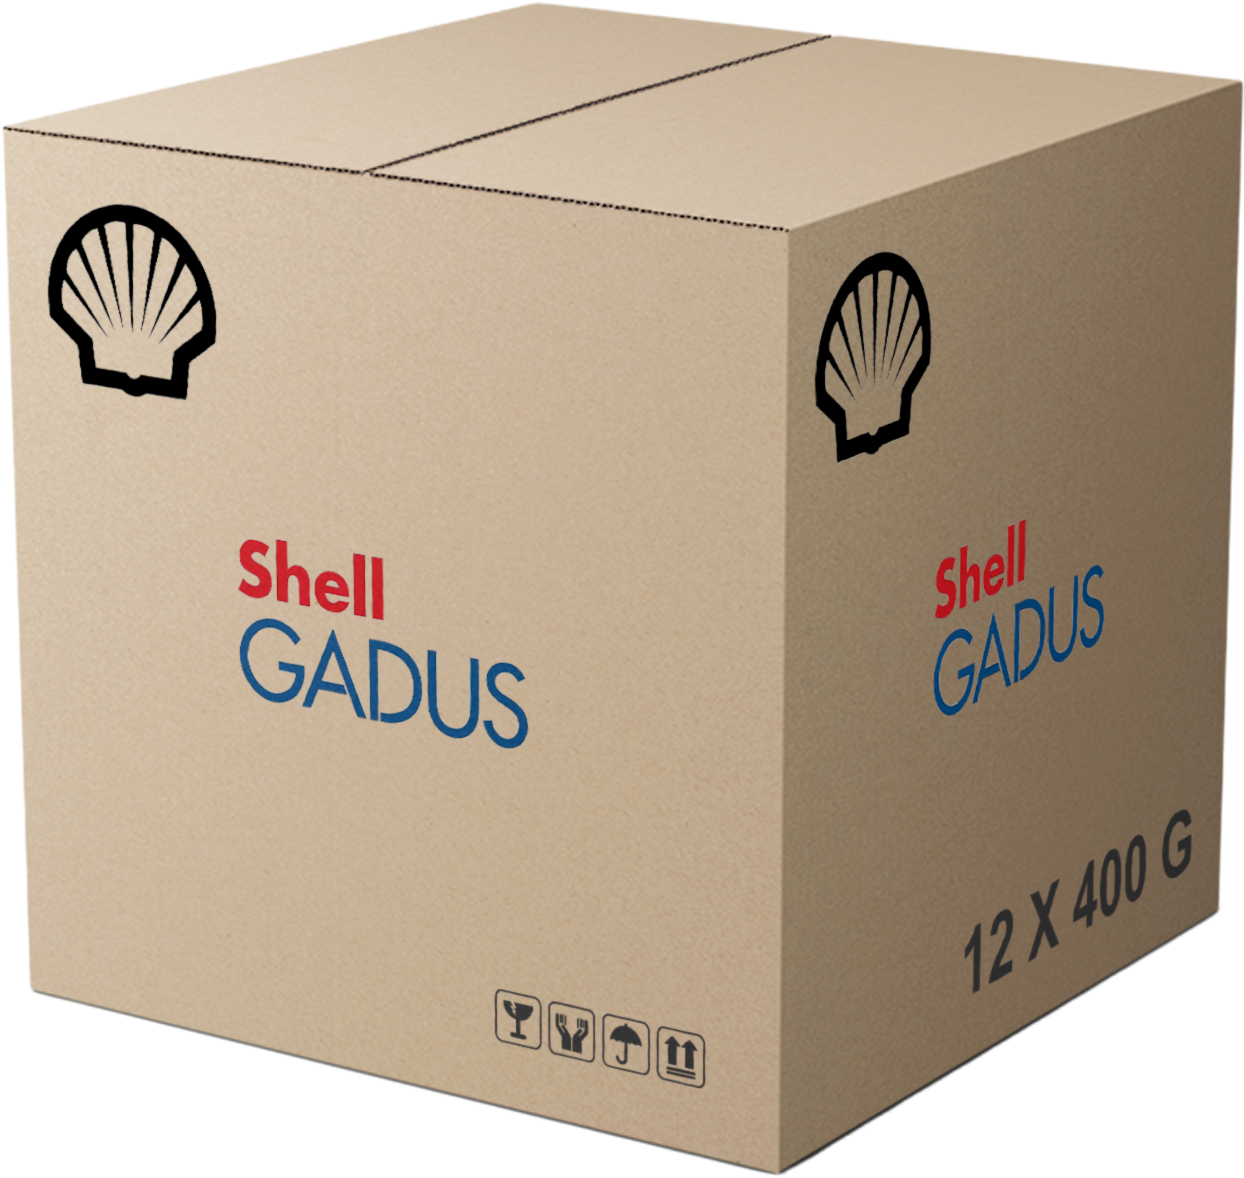 Shell Gadus S1 V220 2, 12 x 400 gr